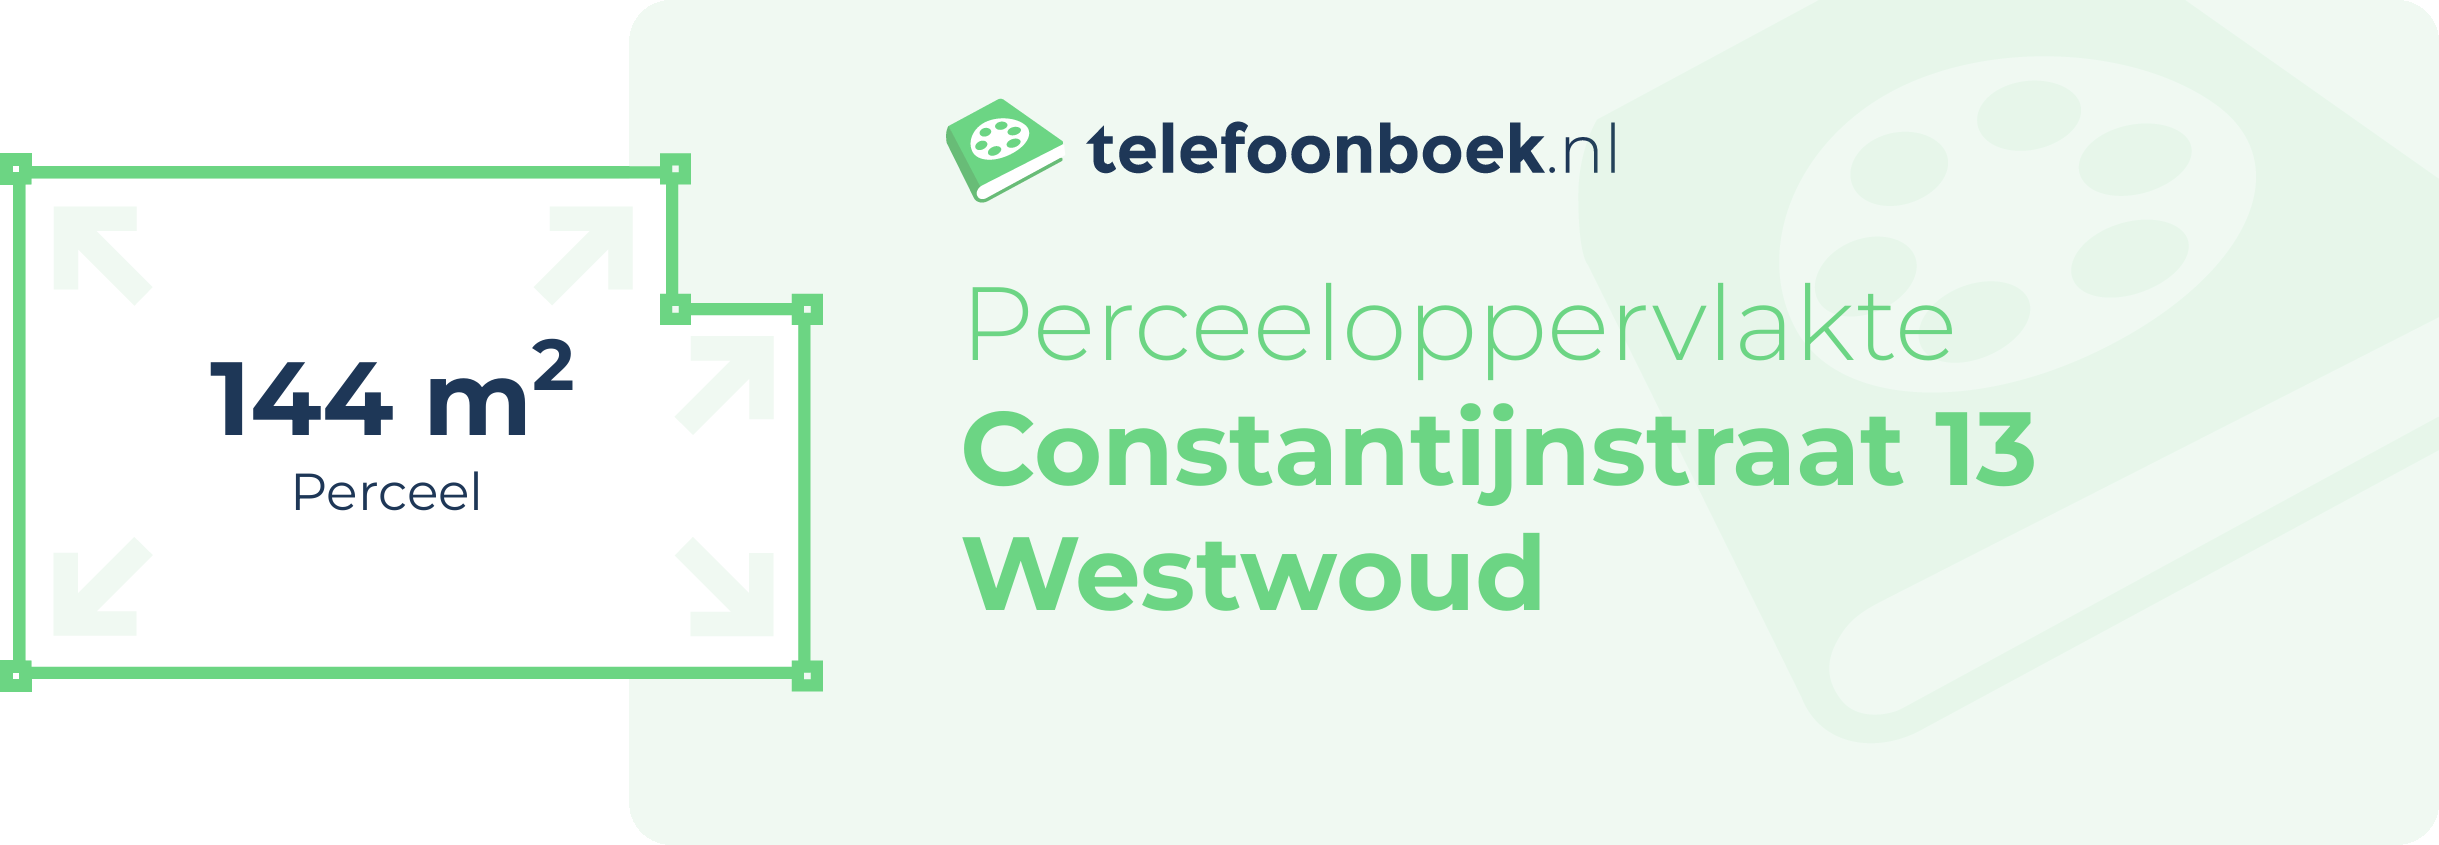 Perceeloppervlakte Constantijnstraat 13 Westwoud